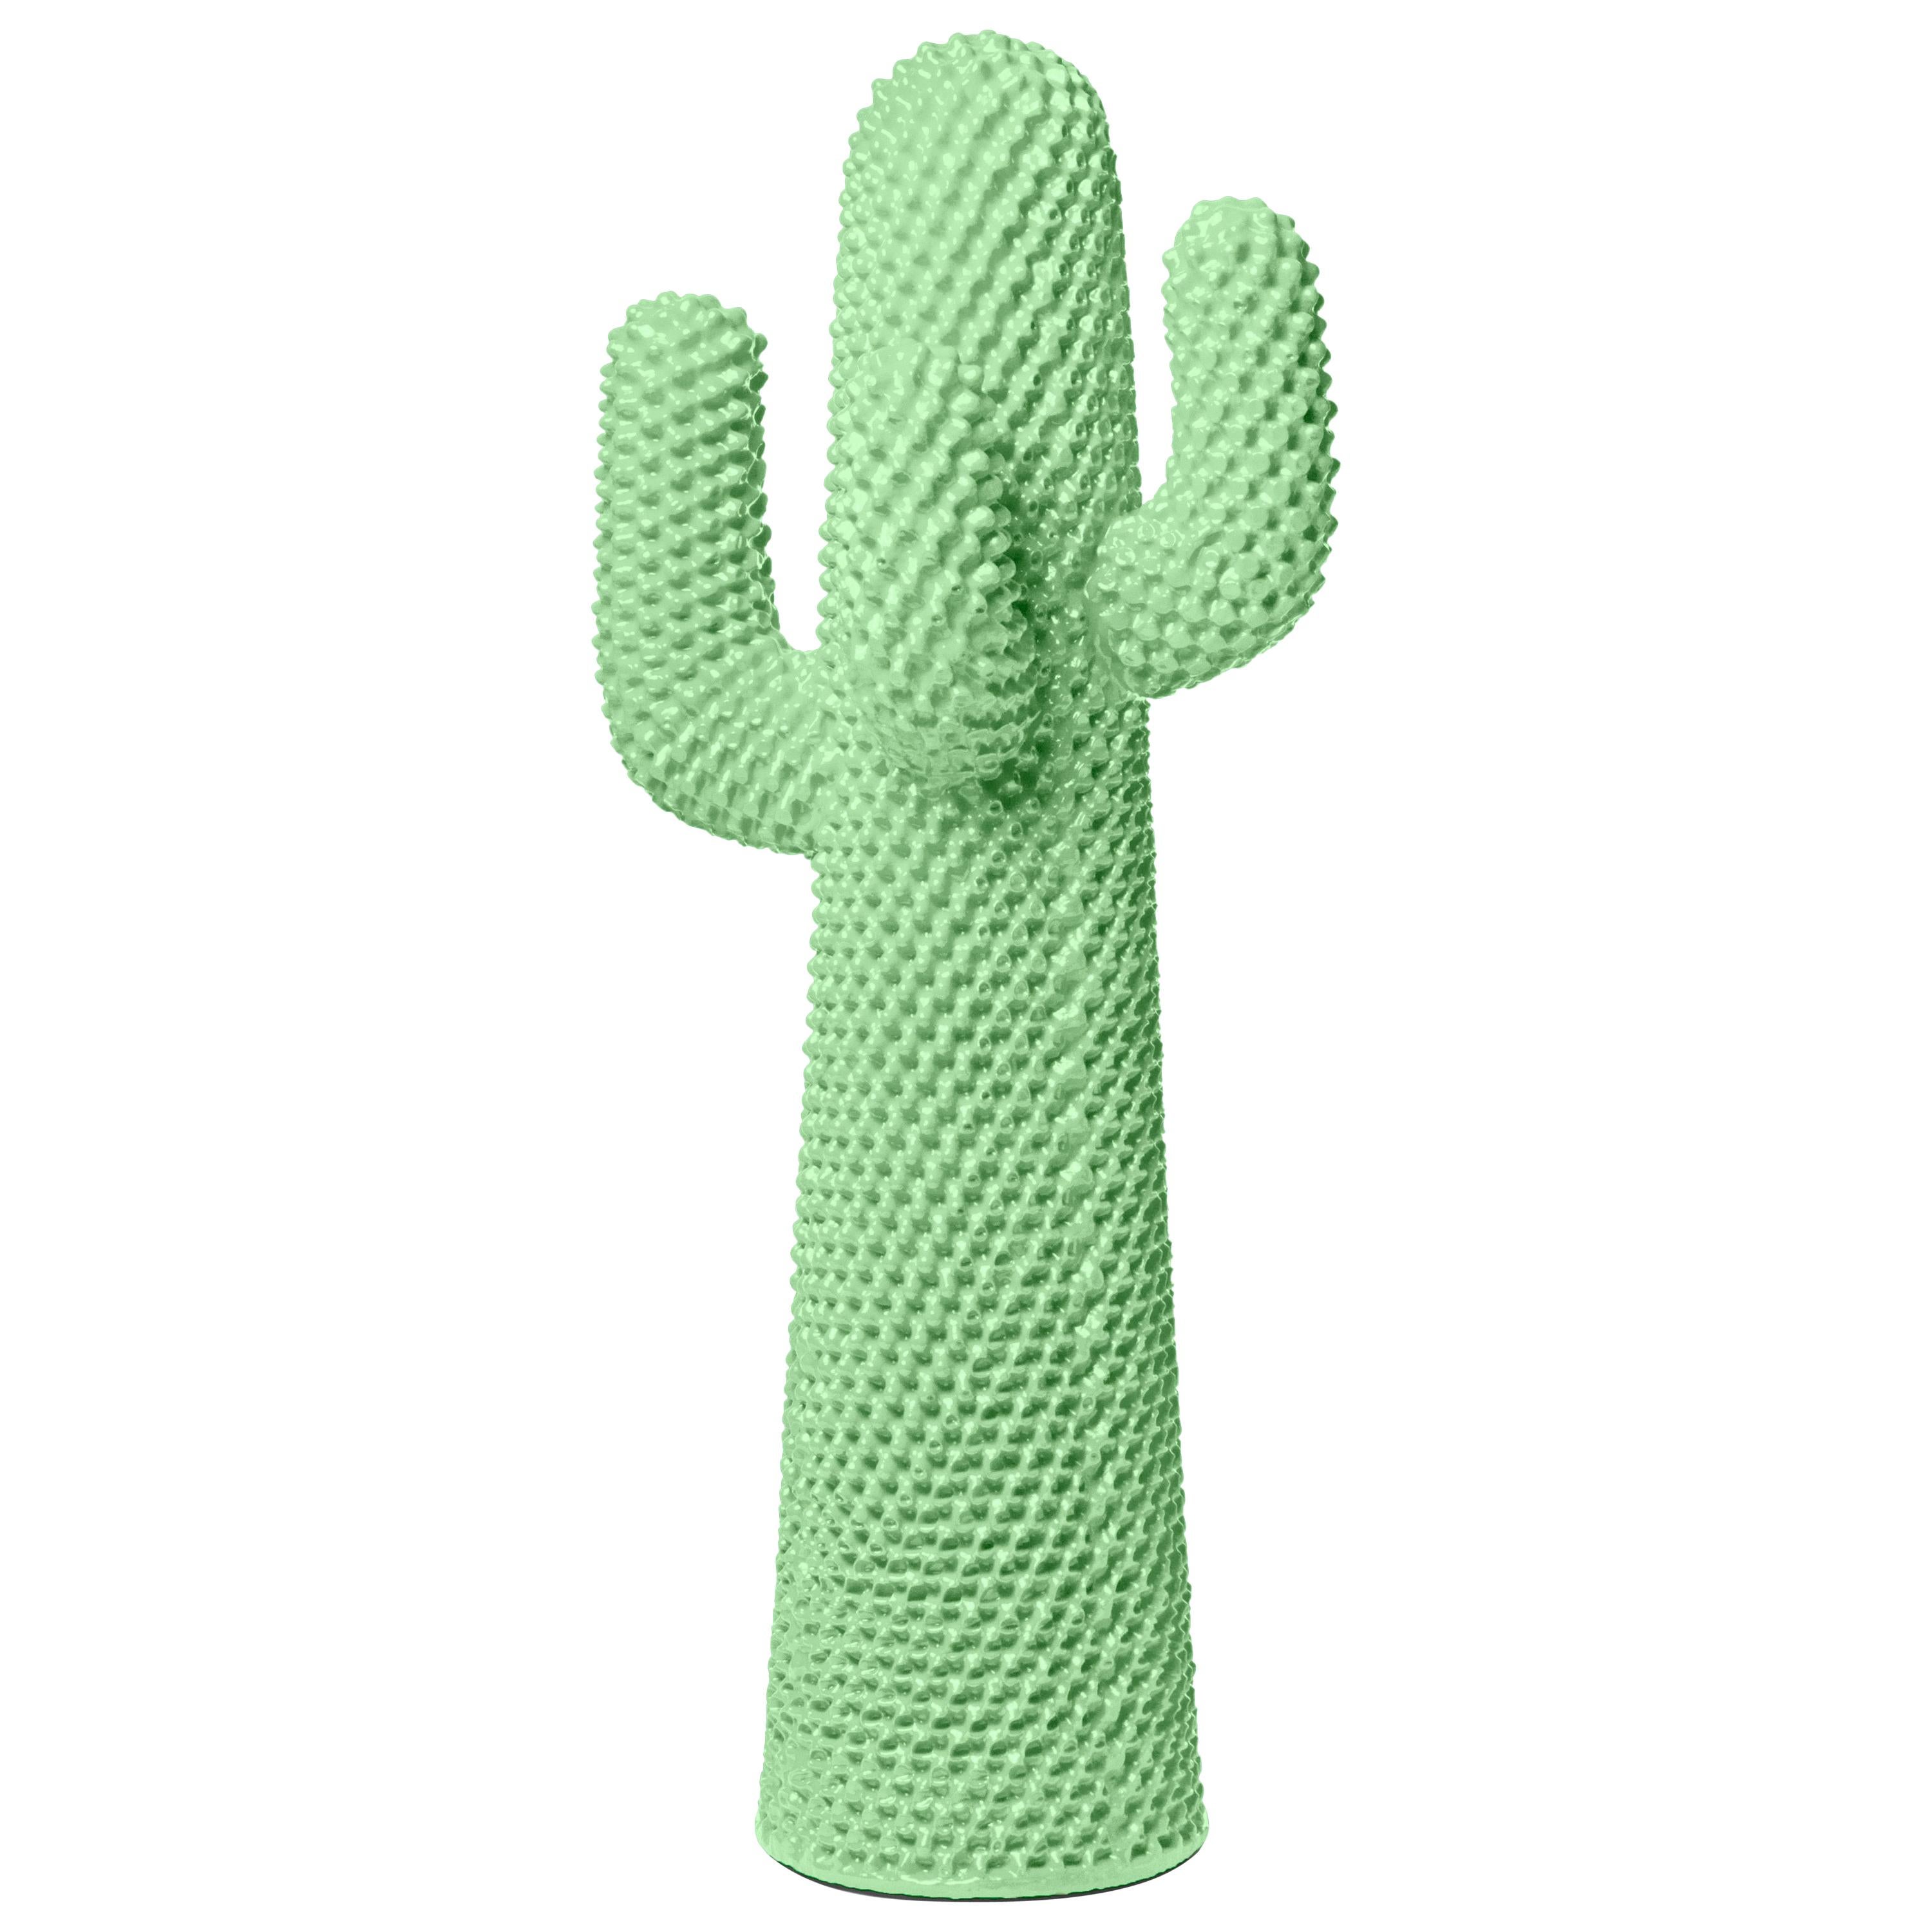 Gufram Radiant Cactus Sculptural Coatrack by Drocco & Mello and Ordovas